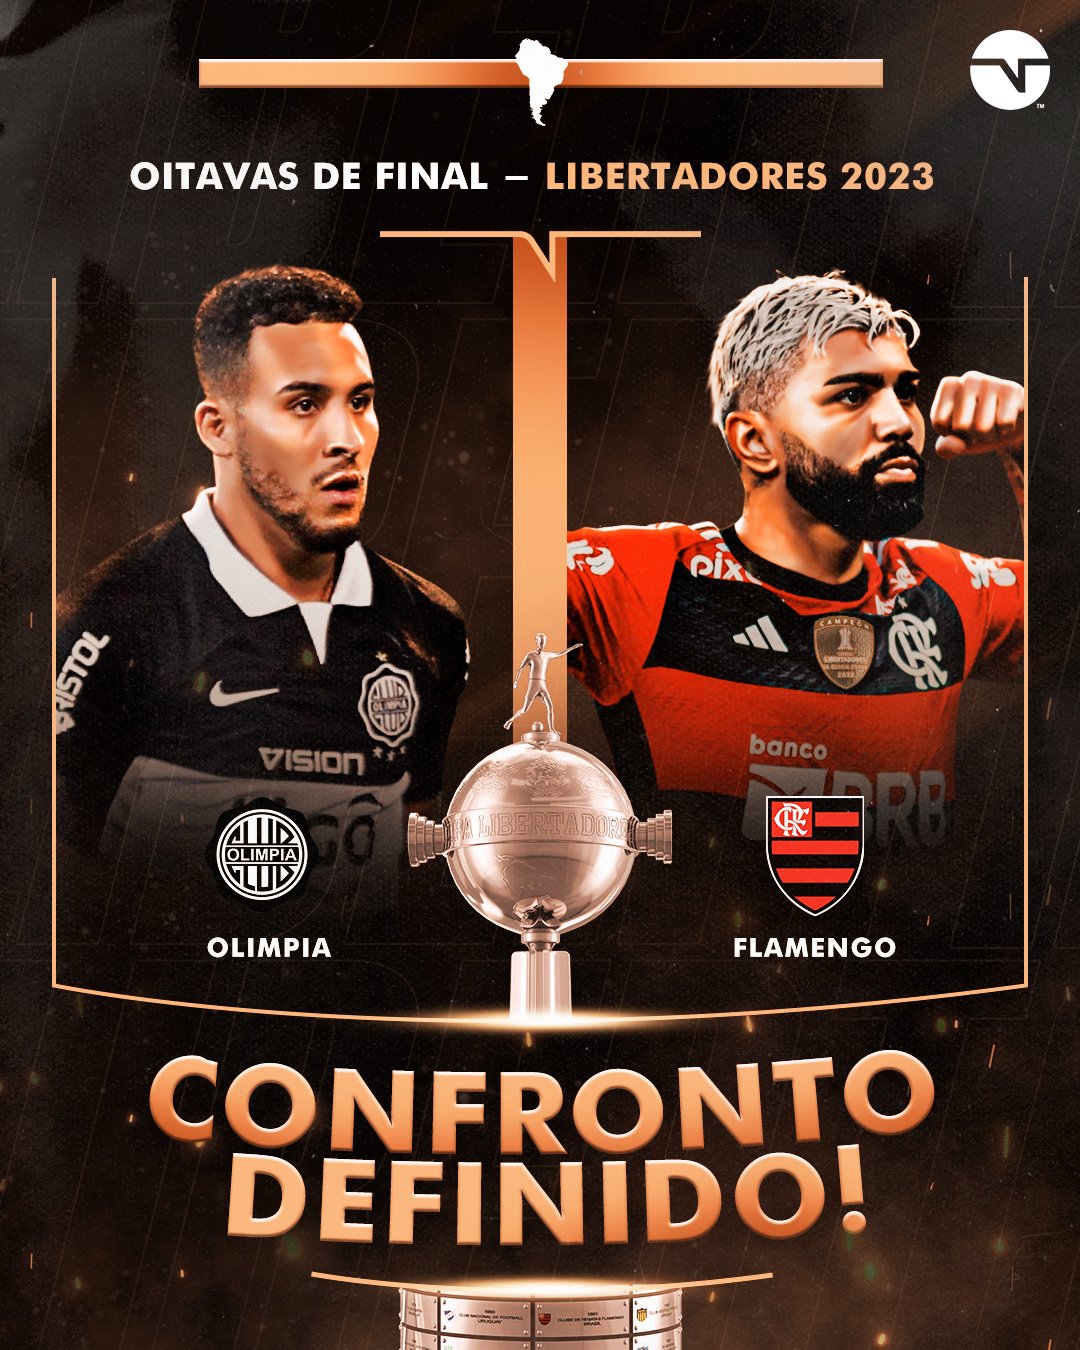 Flamengo on X: Confronto definido! O Mengão enfrentará o Olimpia (PAR) nas  quartas de final da Conmebol Libertadores. Vamos com tudo! 💪❤️🖤 #CRF  #VamosFlamengo  / X